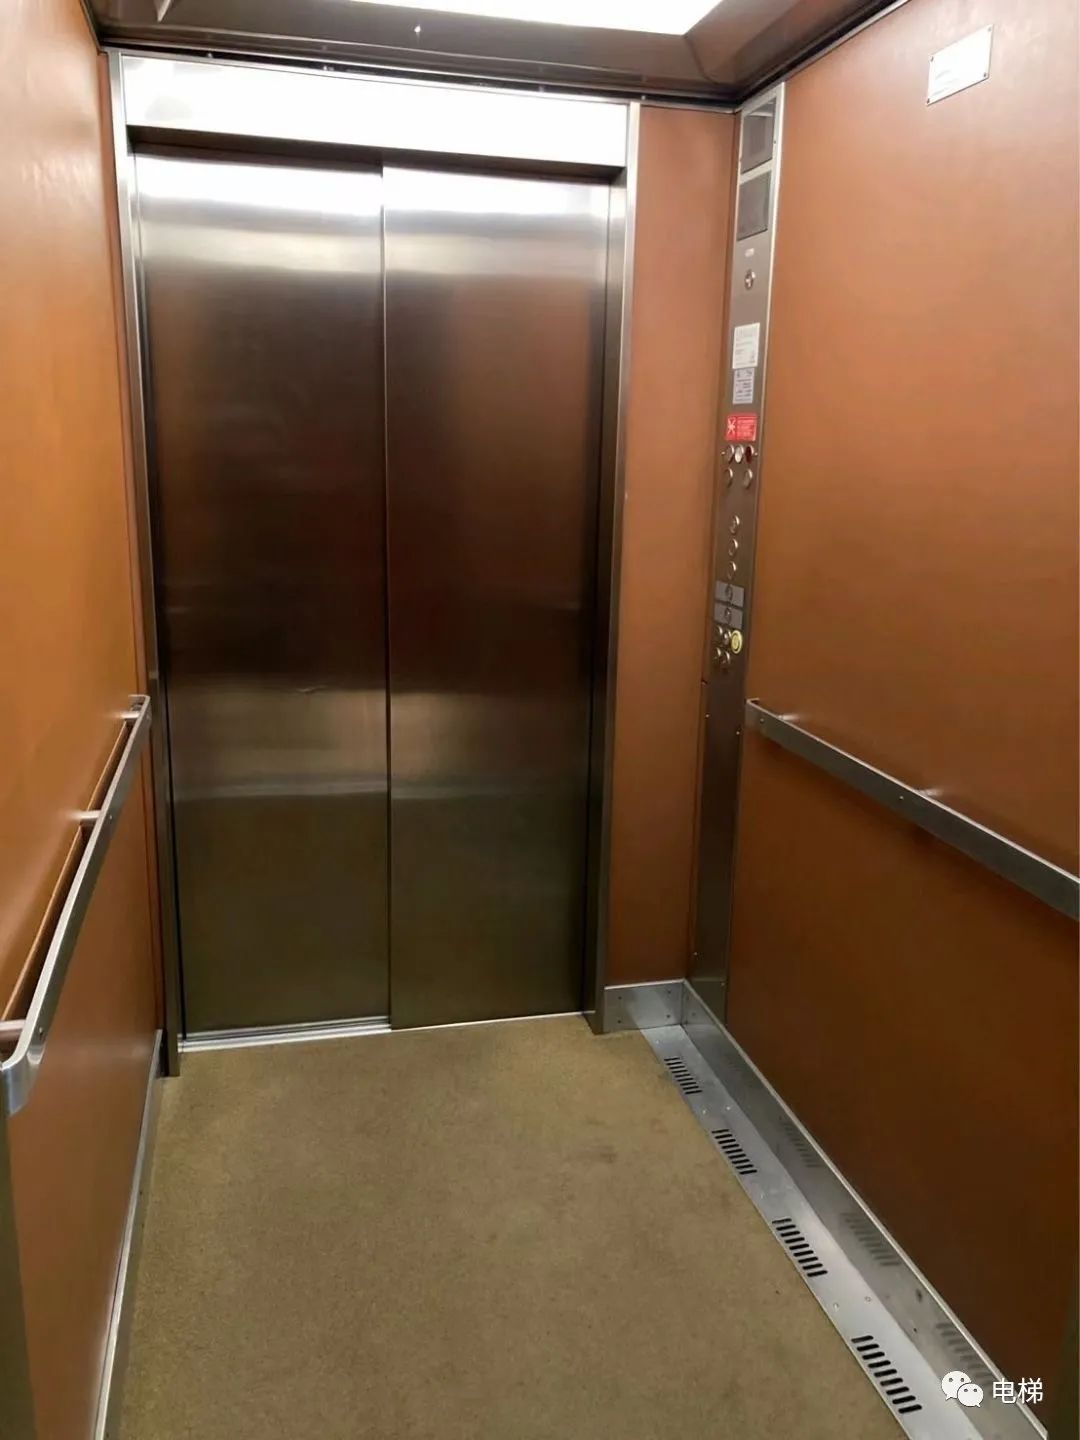 实拍:罕见的迅达电梯!